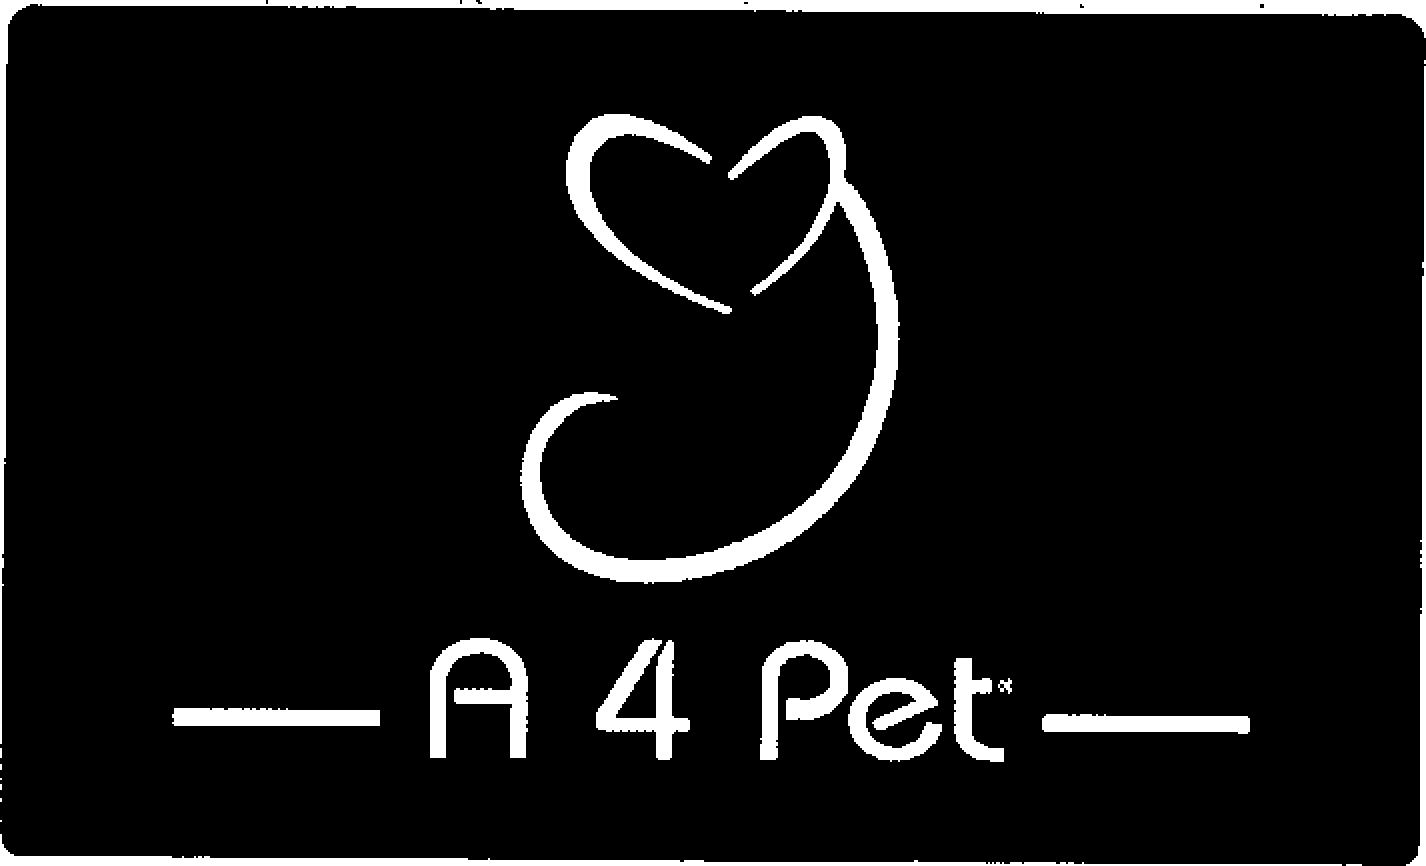 A 4 PET